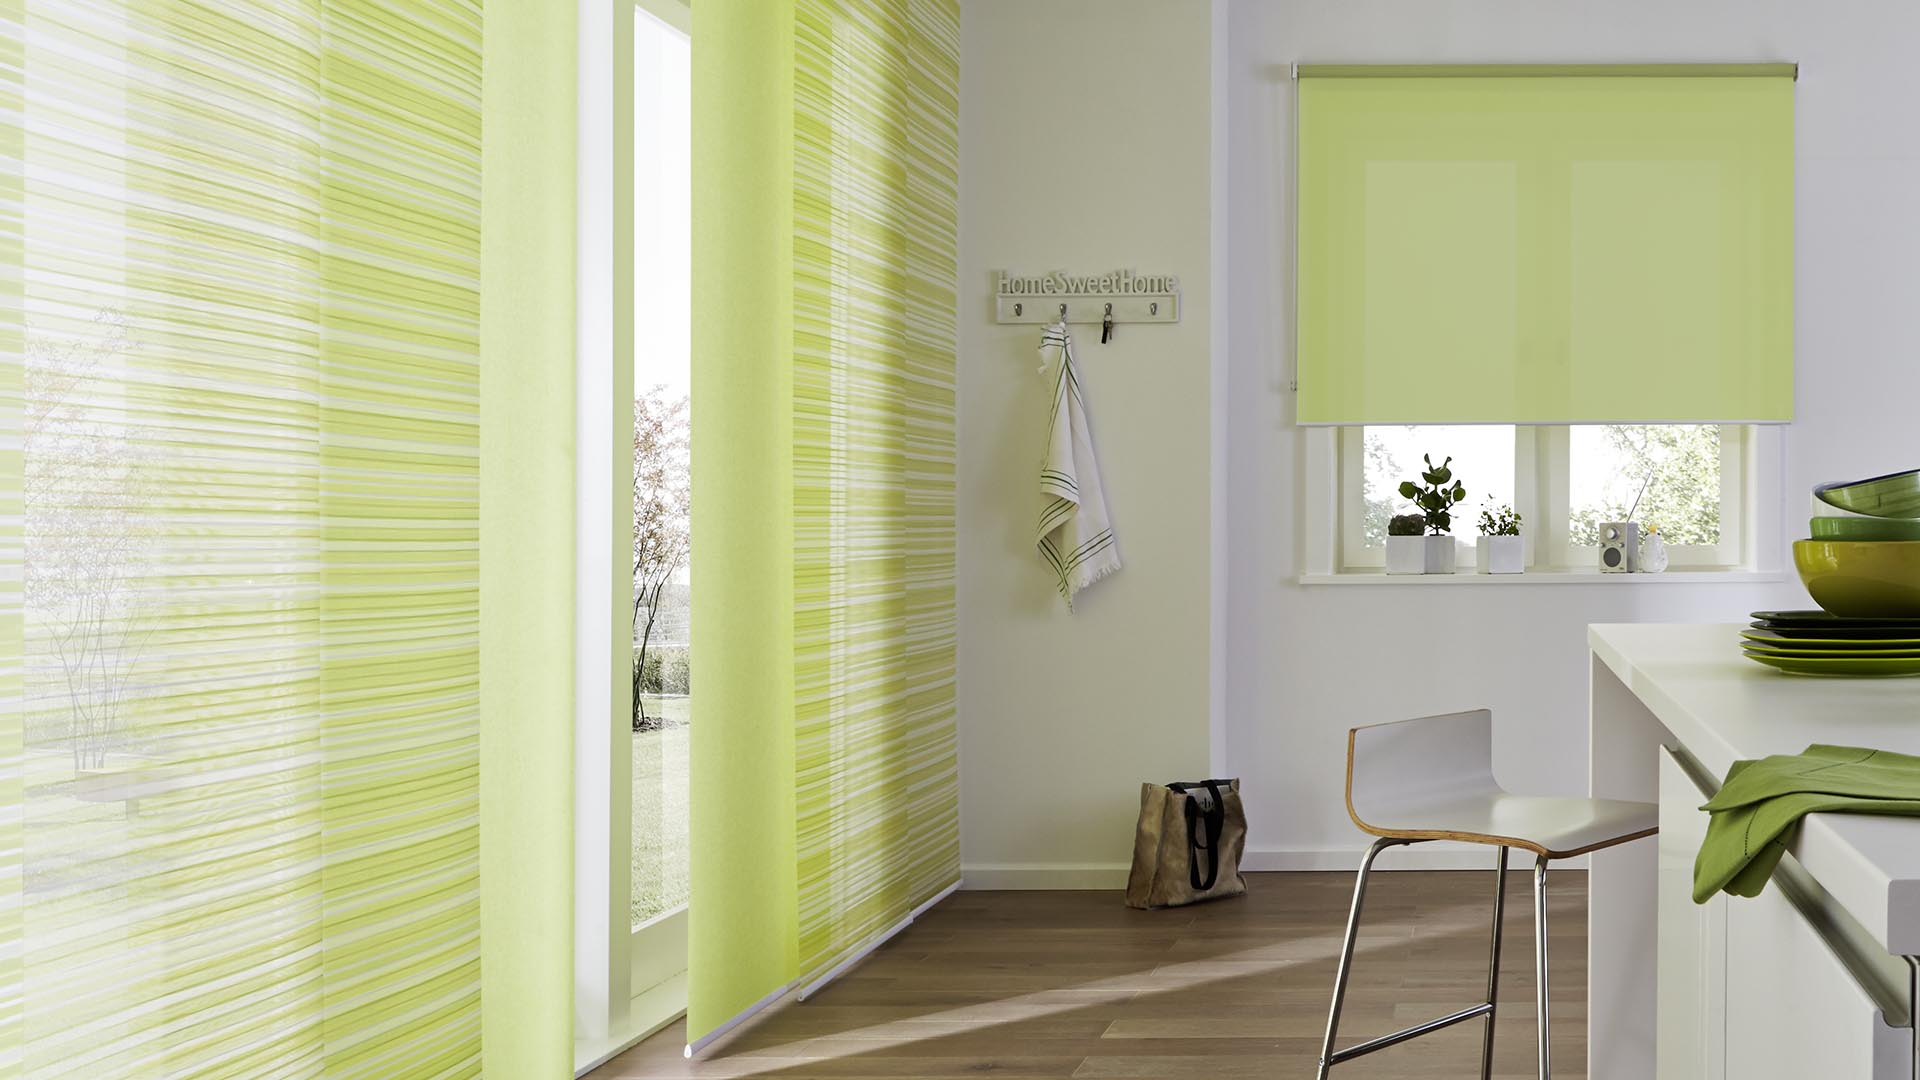 Grüne Flächenvorhänge mit einem eleganten Muster an Fenstern. Sichtbar in Kombination mit einem gleichfarbigen Rollo.